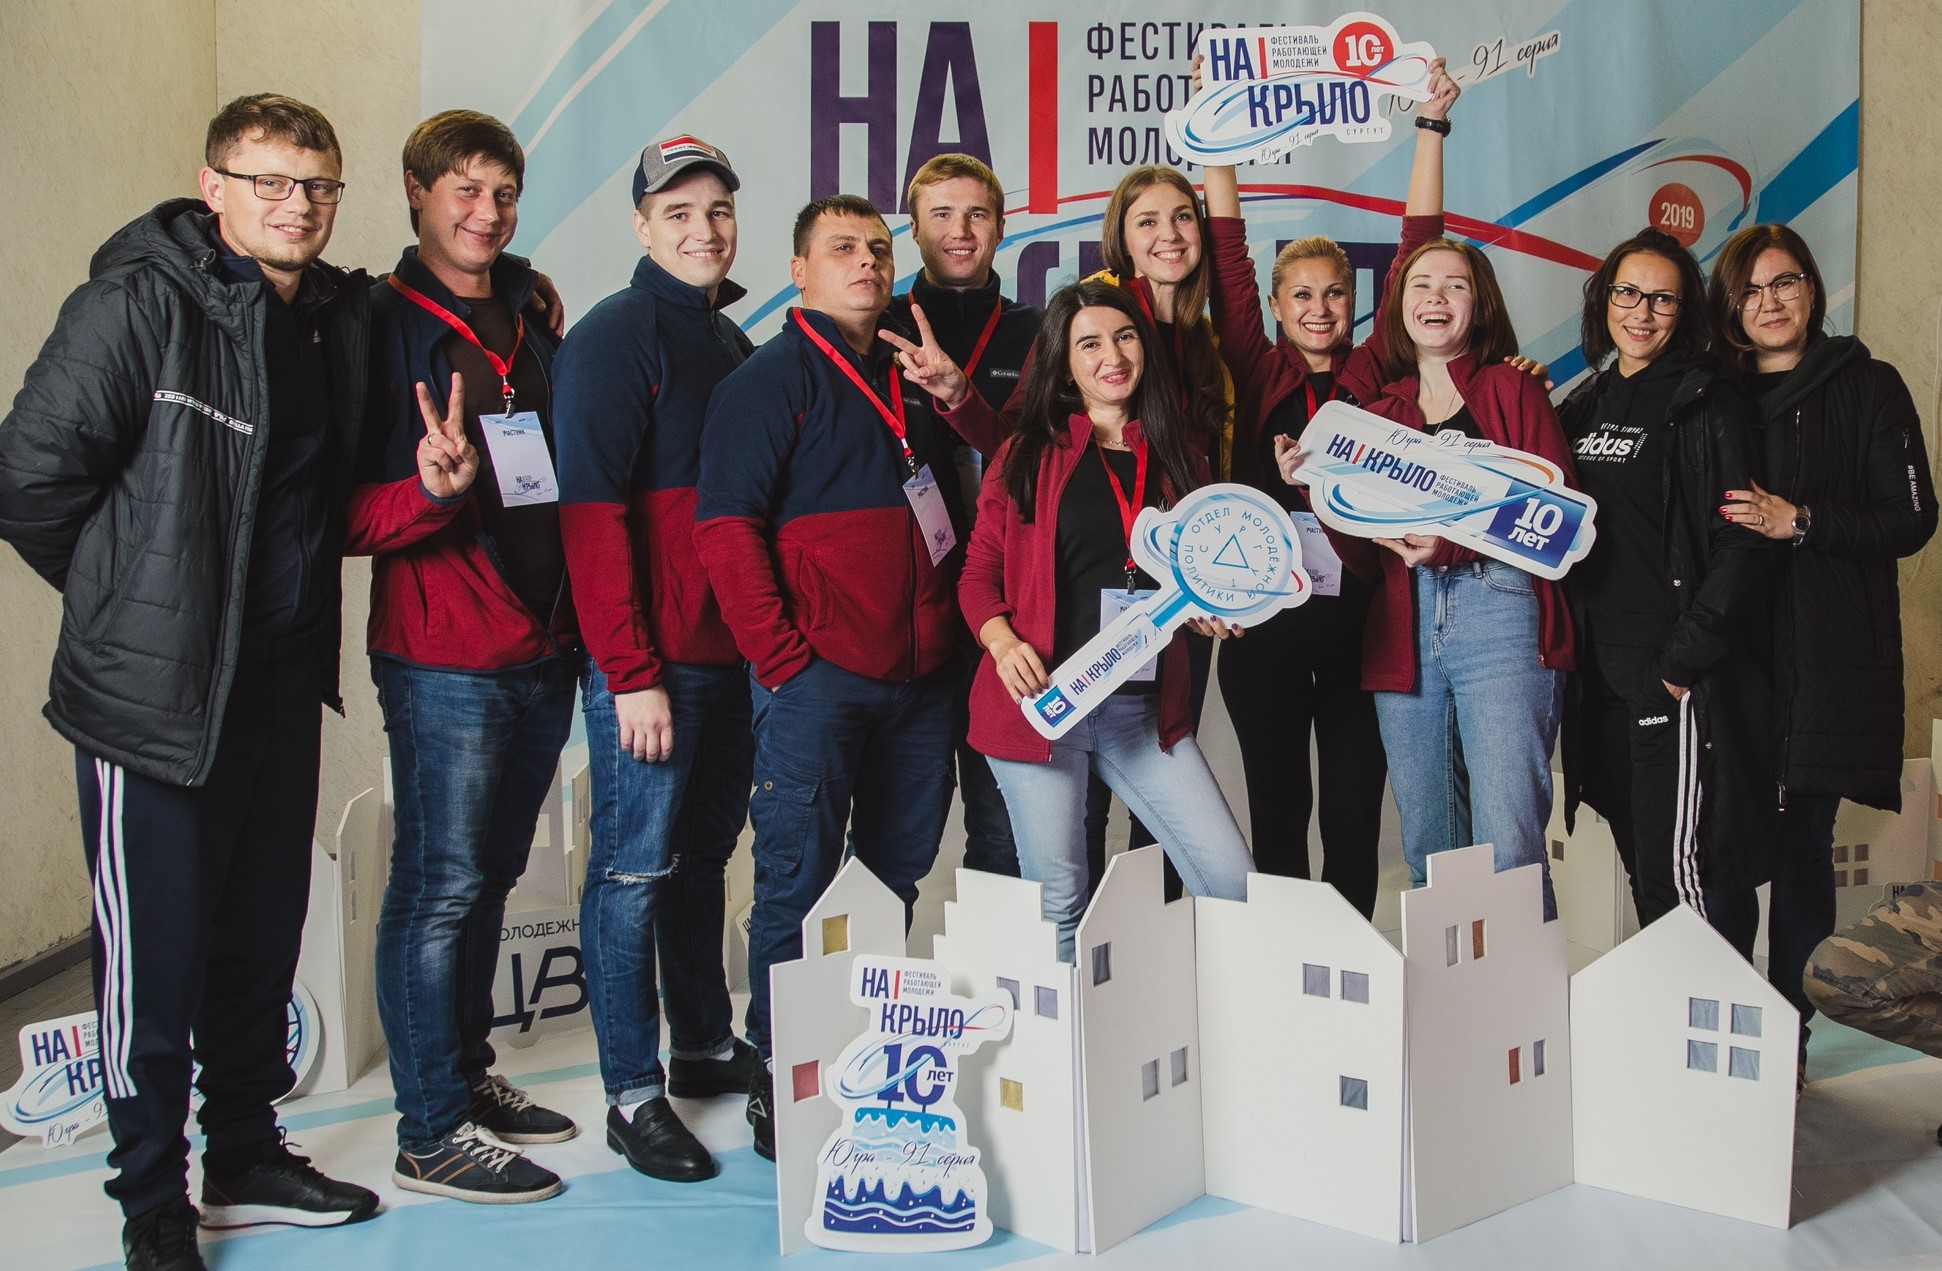 Молодежь СГМУП «Городские тепловые сети» приняла участие в юбилейном фестивале «На крыло!»